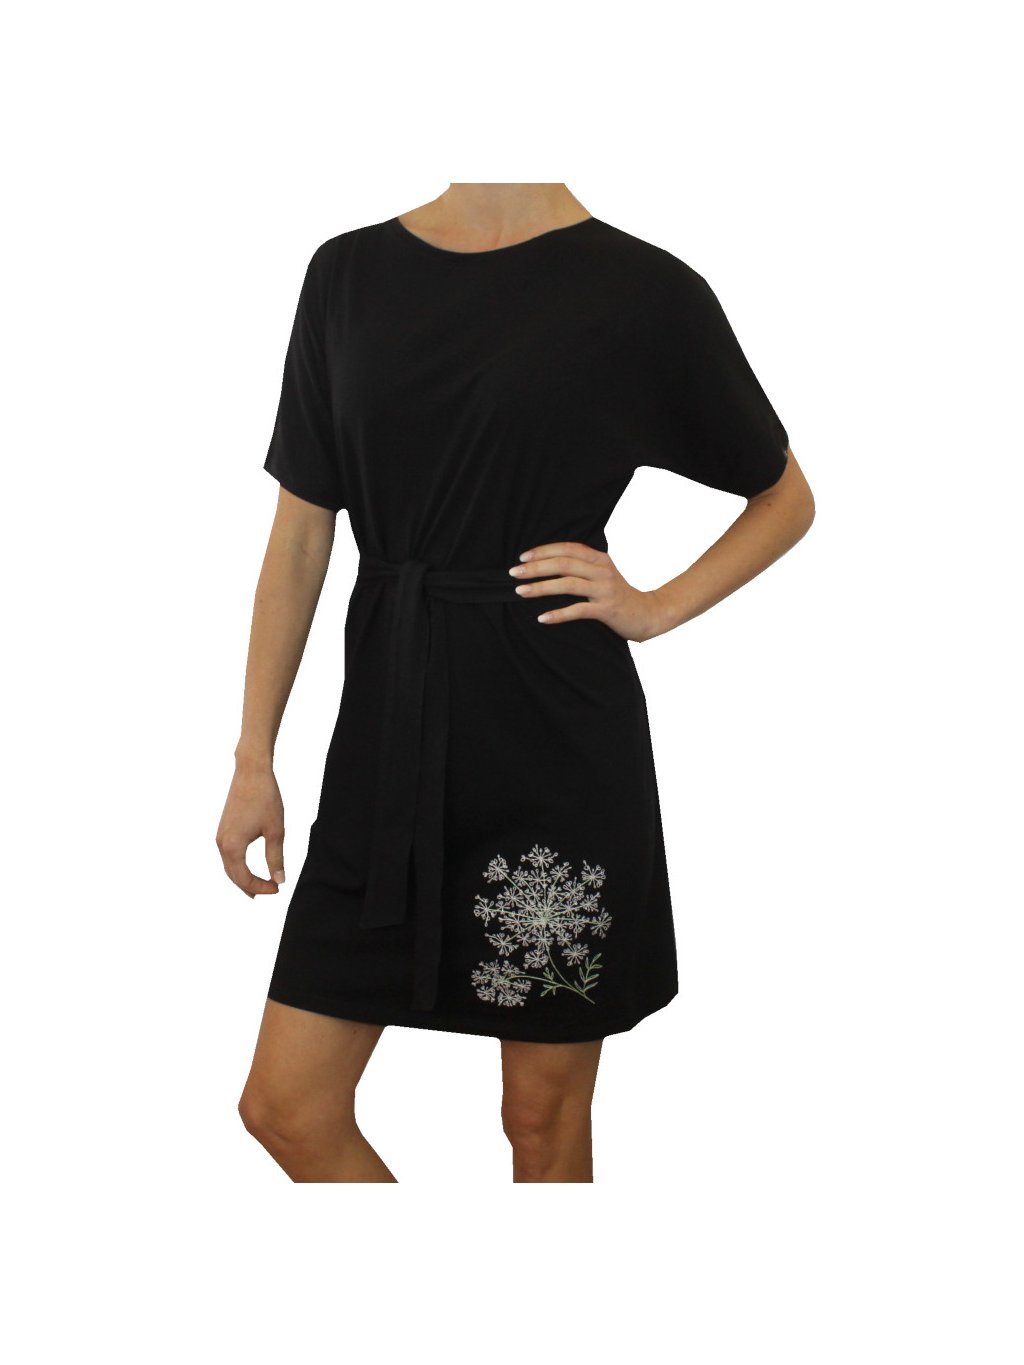 Černé dámské šaty MEDA, volnější střih s páskem, rostlina